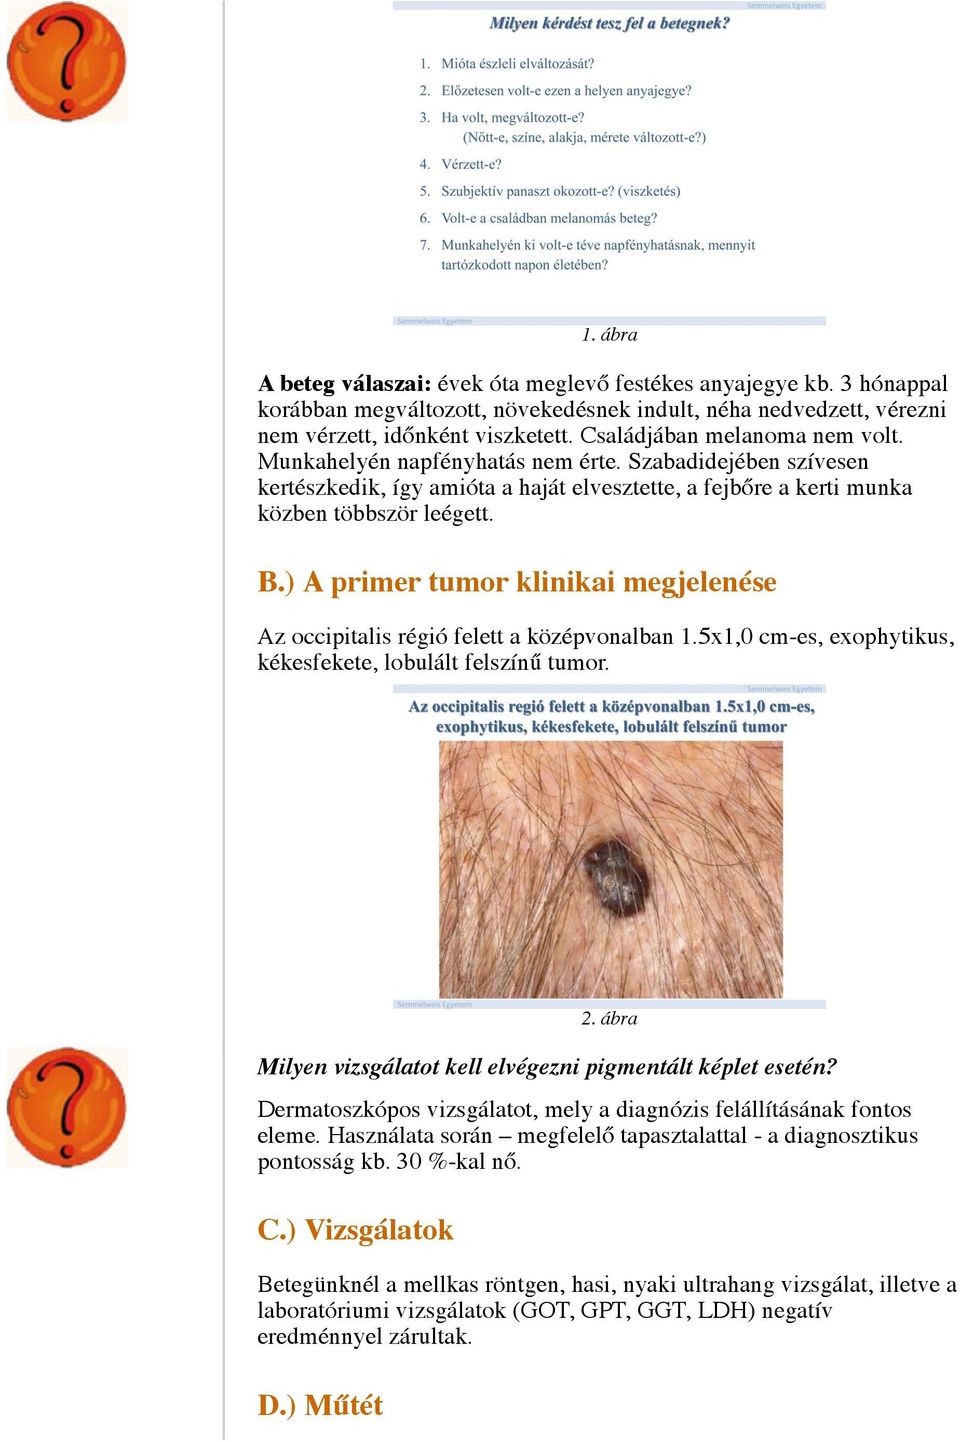 A melanoma malignum kezelése